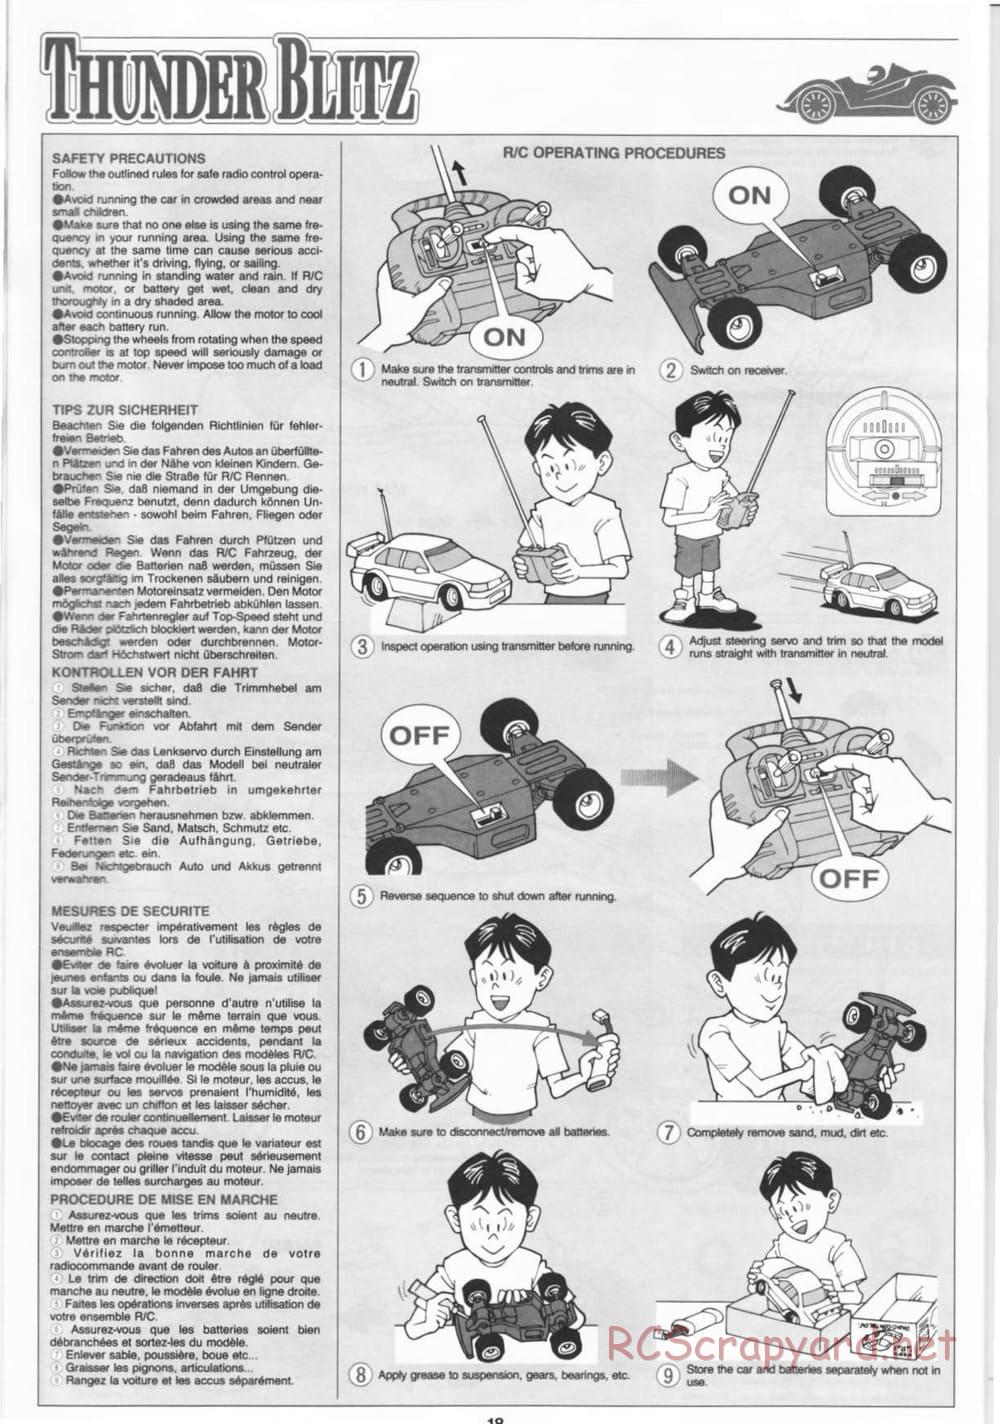 Tamiya - Thunder Blitz - Boy's 4WD Chassis - Manual - Page 18